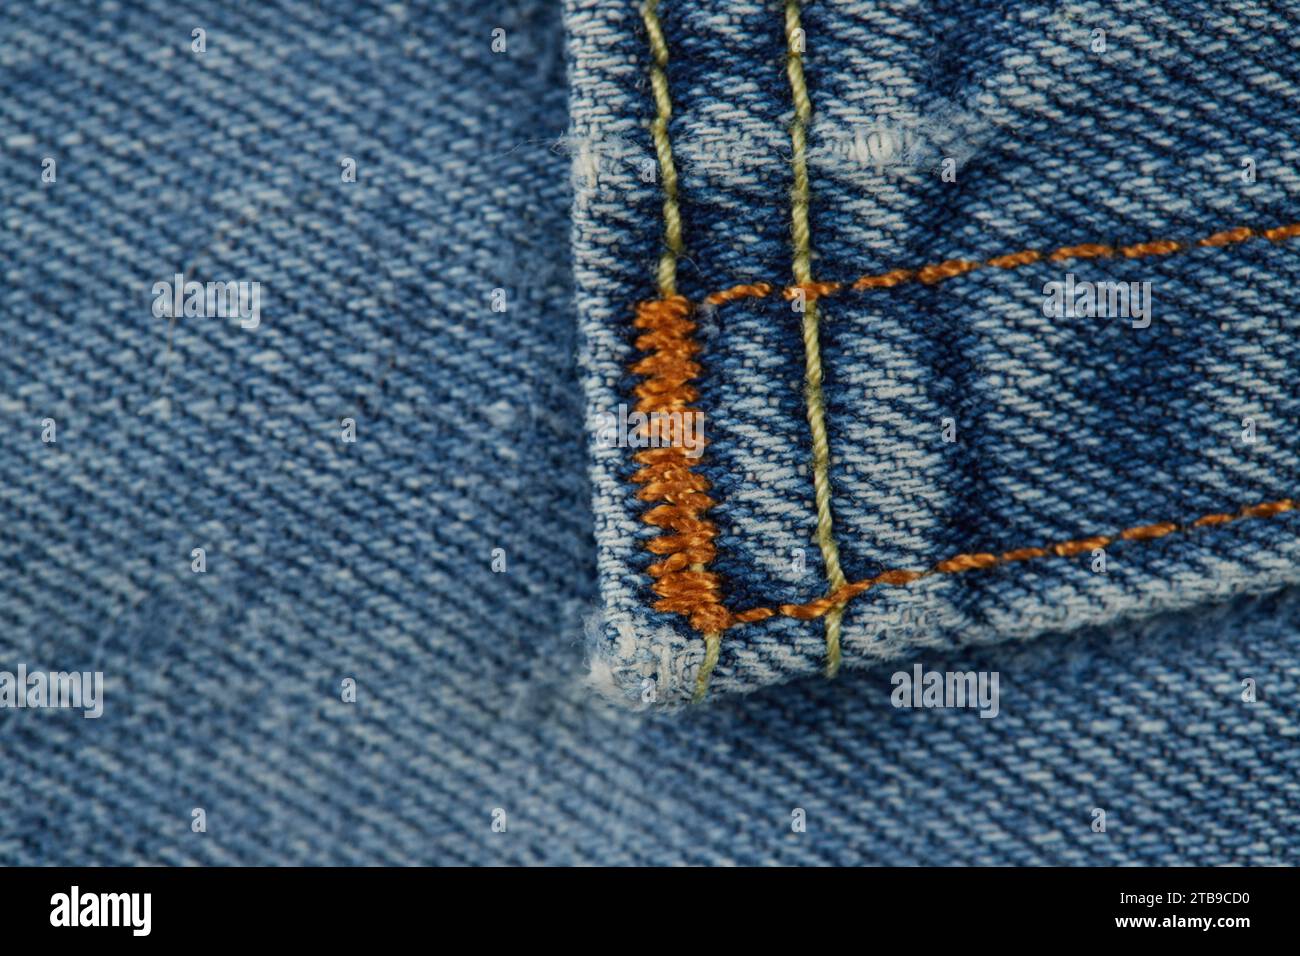 Denim industria tessile, jeans, giacche, gonne, pantaloni, denim vecchio, denim sbiadito. Il denim come è riconosciuto oggi è stato prodotto per la prima volta a Nimes in Francia!! Foto Stock